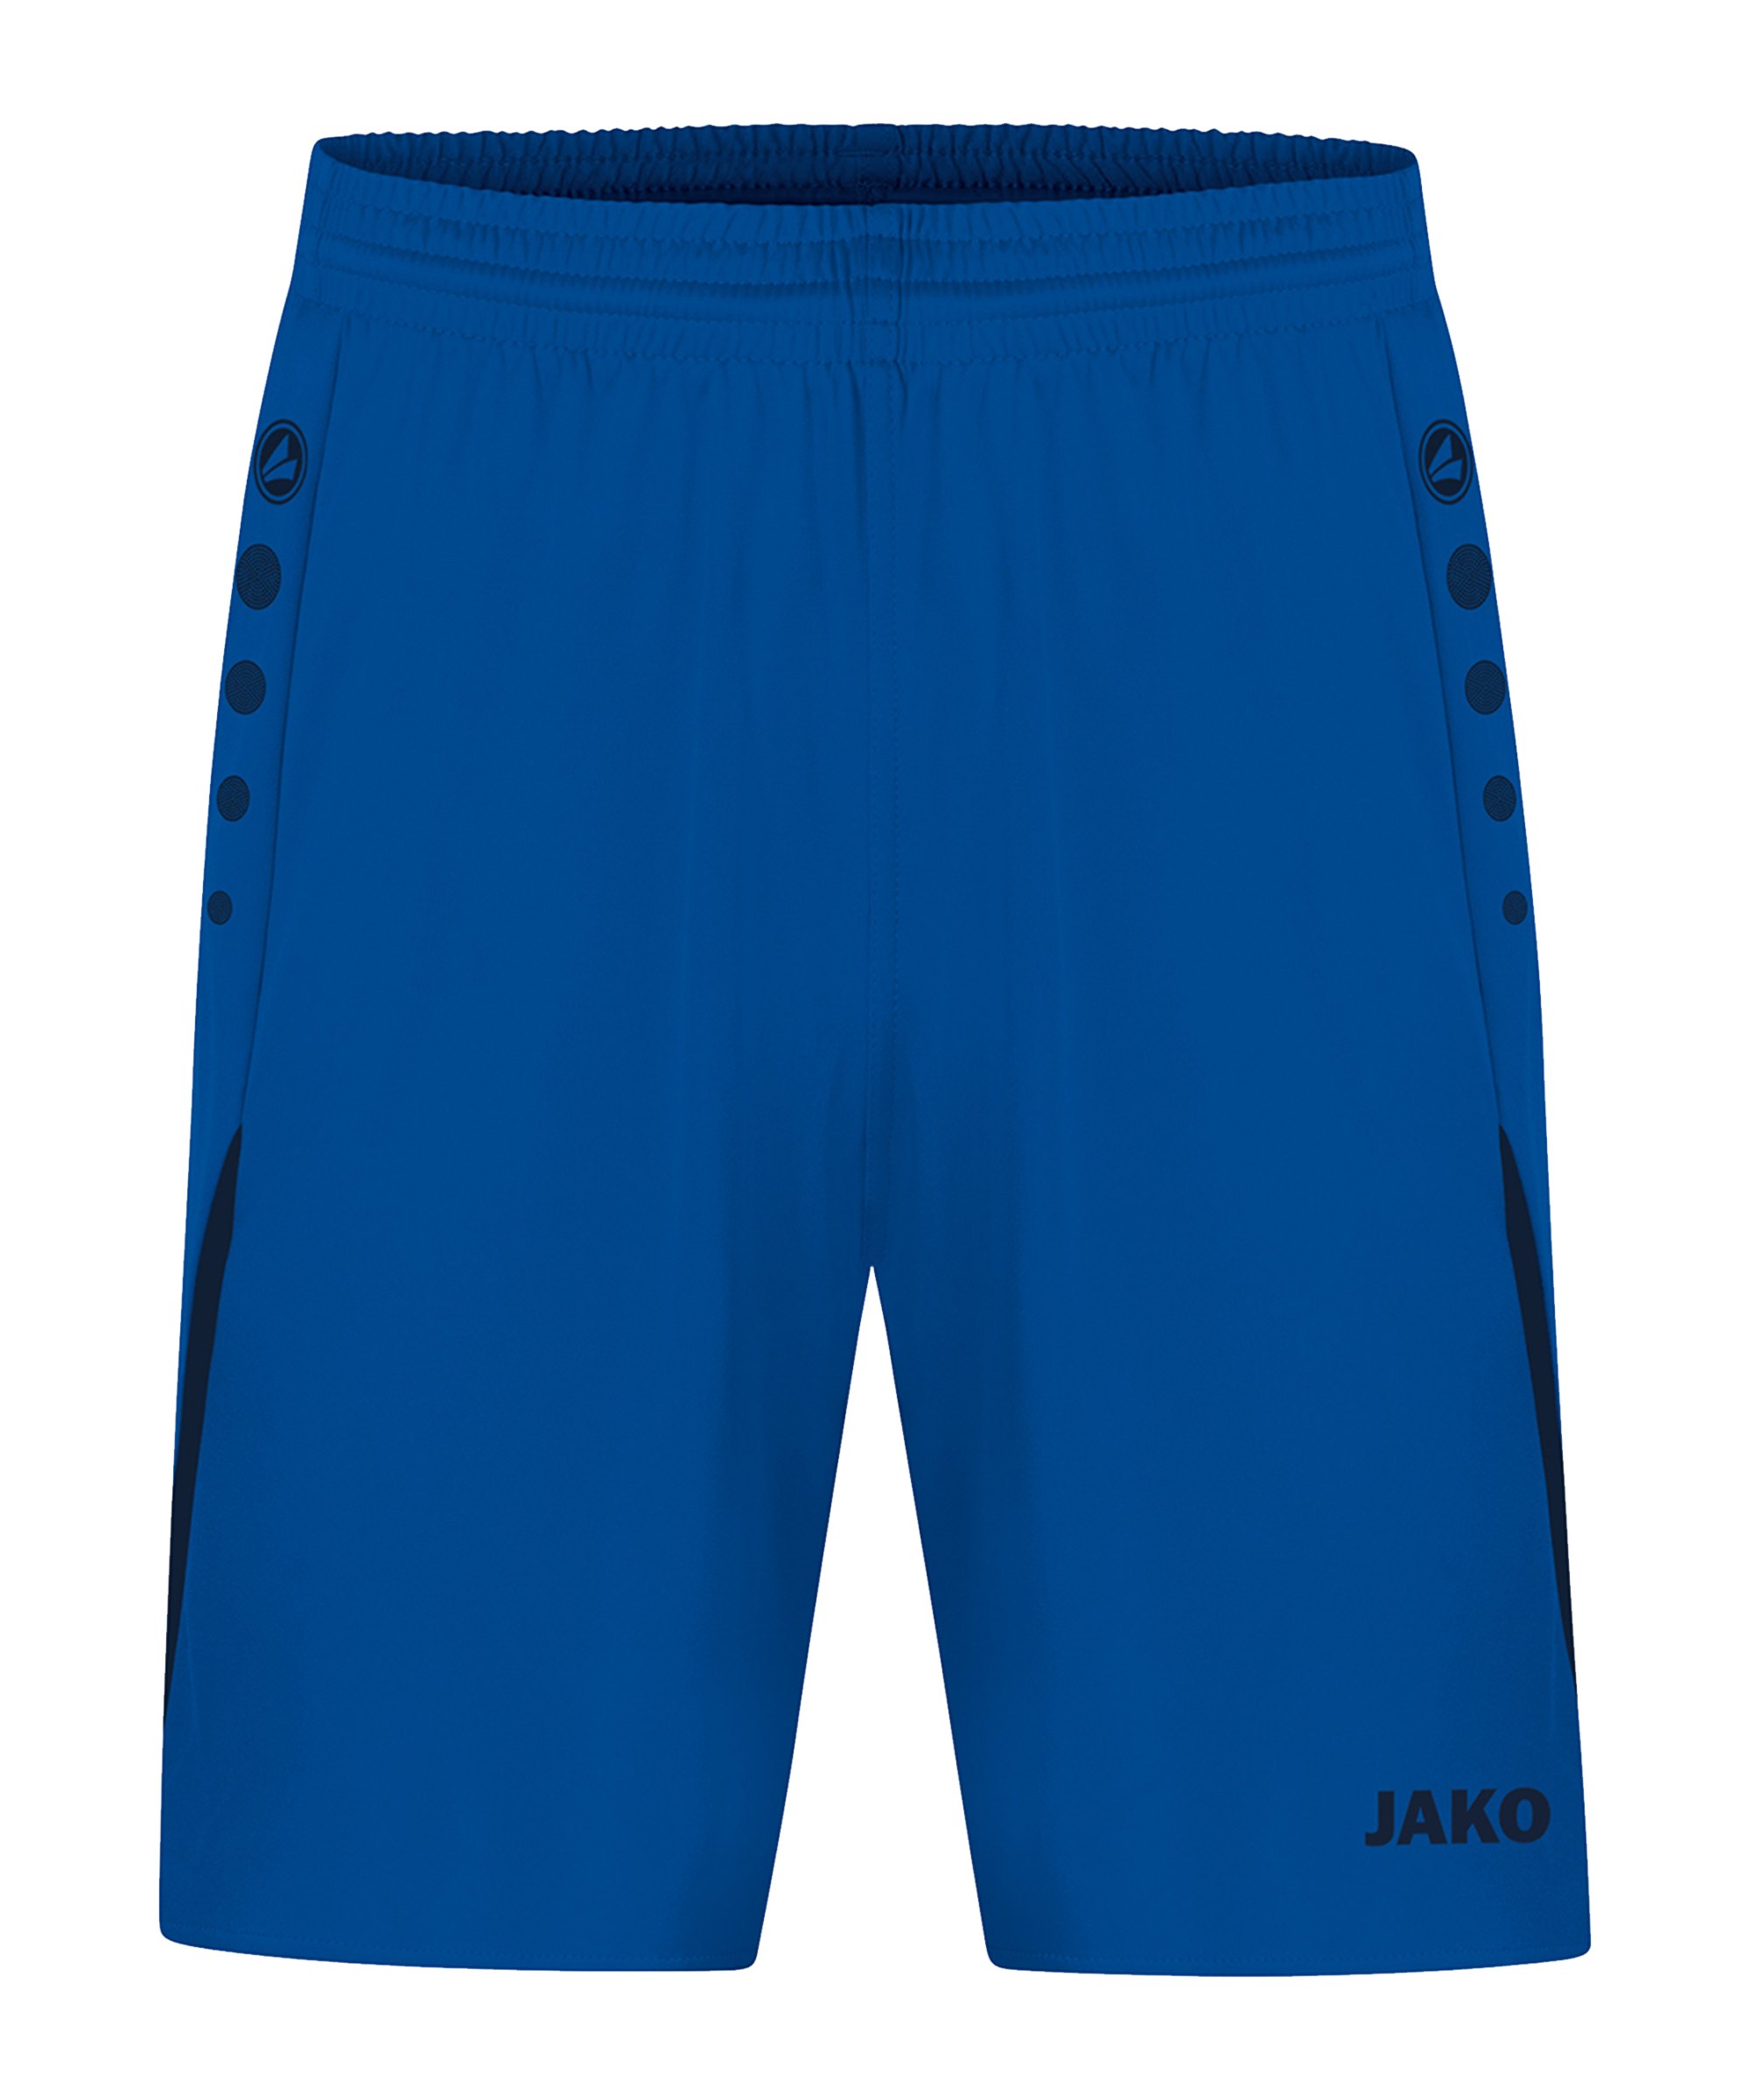 JAKO Challenge Short Kids Blau F403 - blau